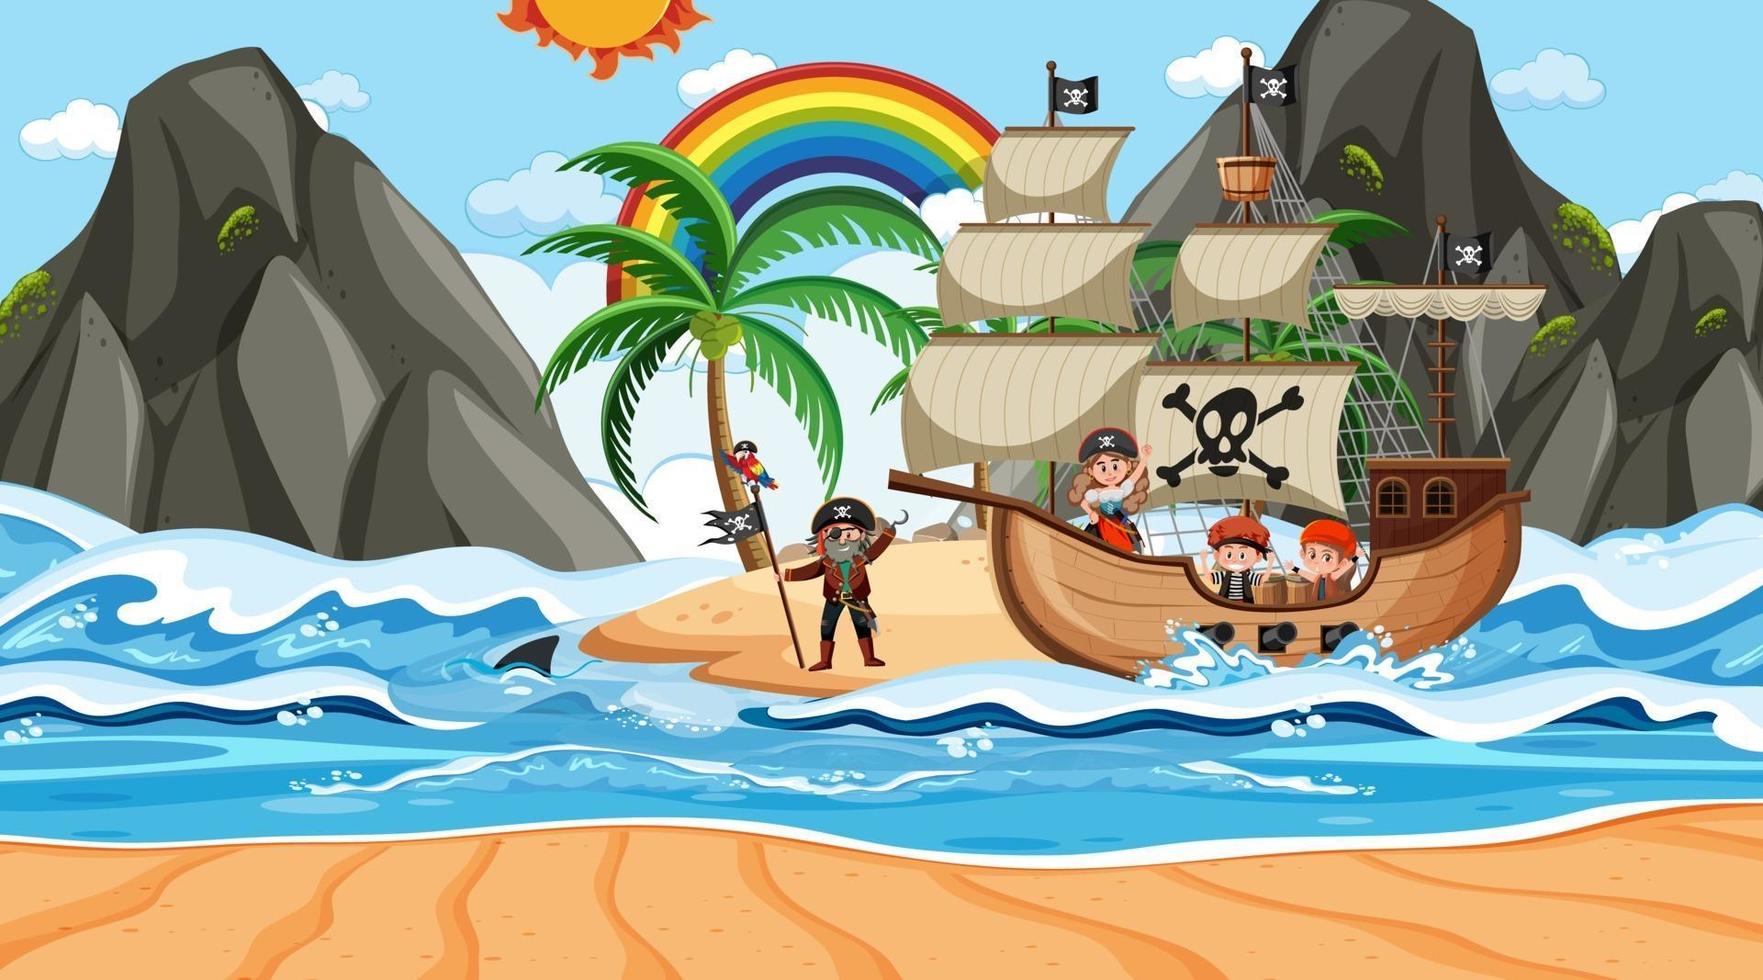 Strand mit Piratenschiff bei Tagesszene im Cartoon-Stil vektor